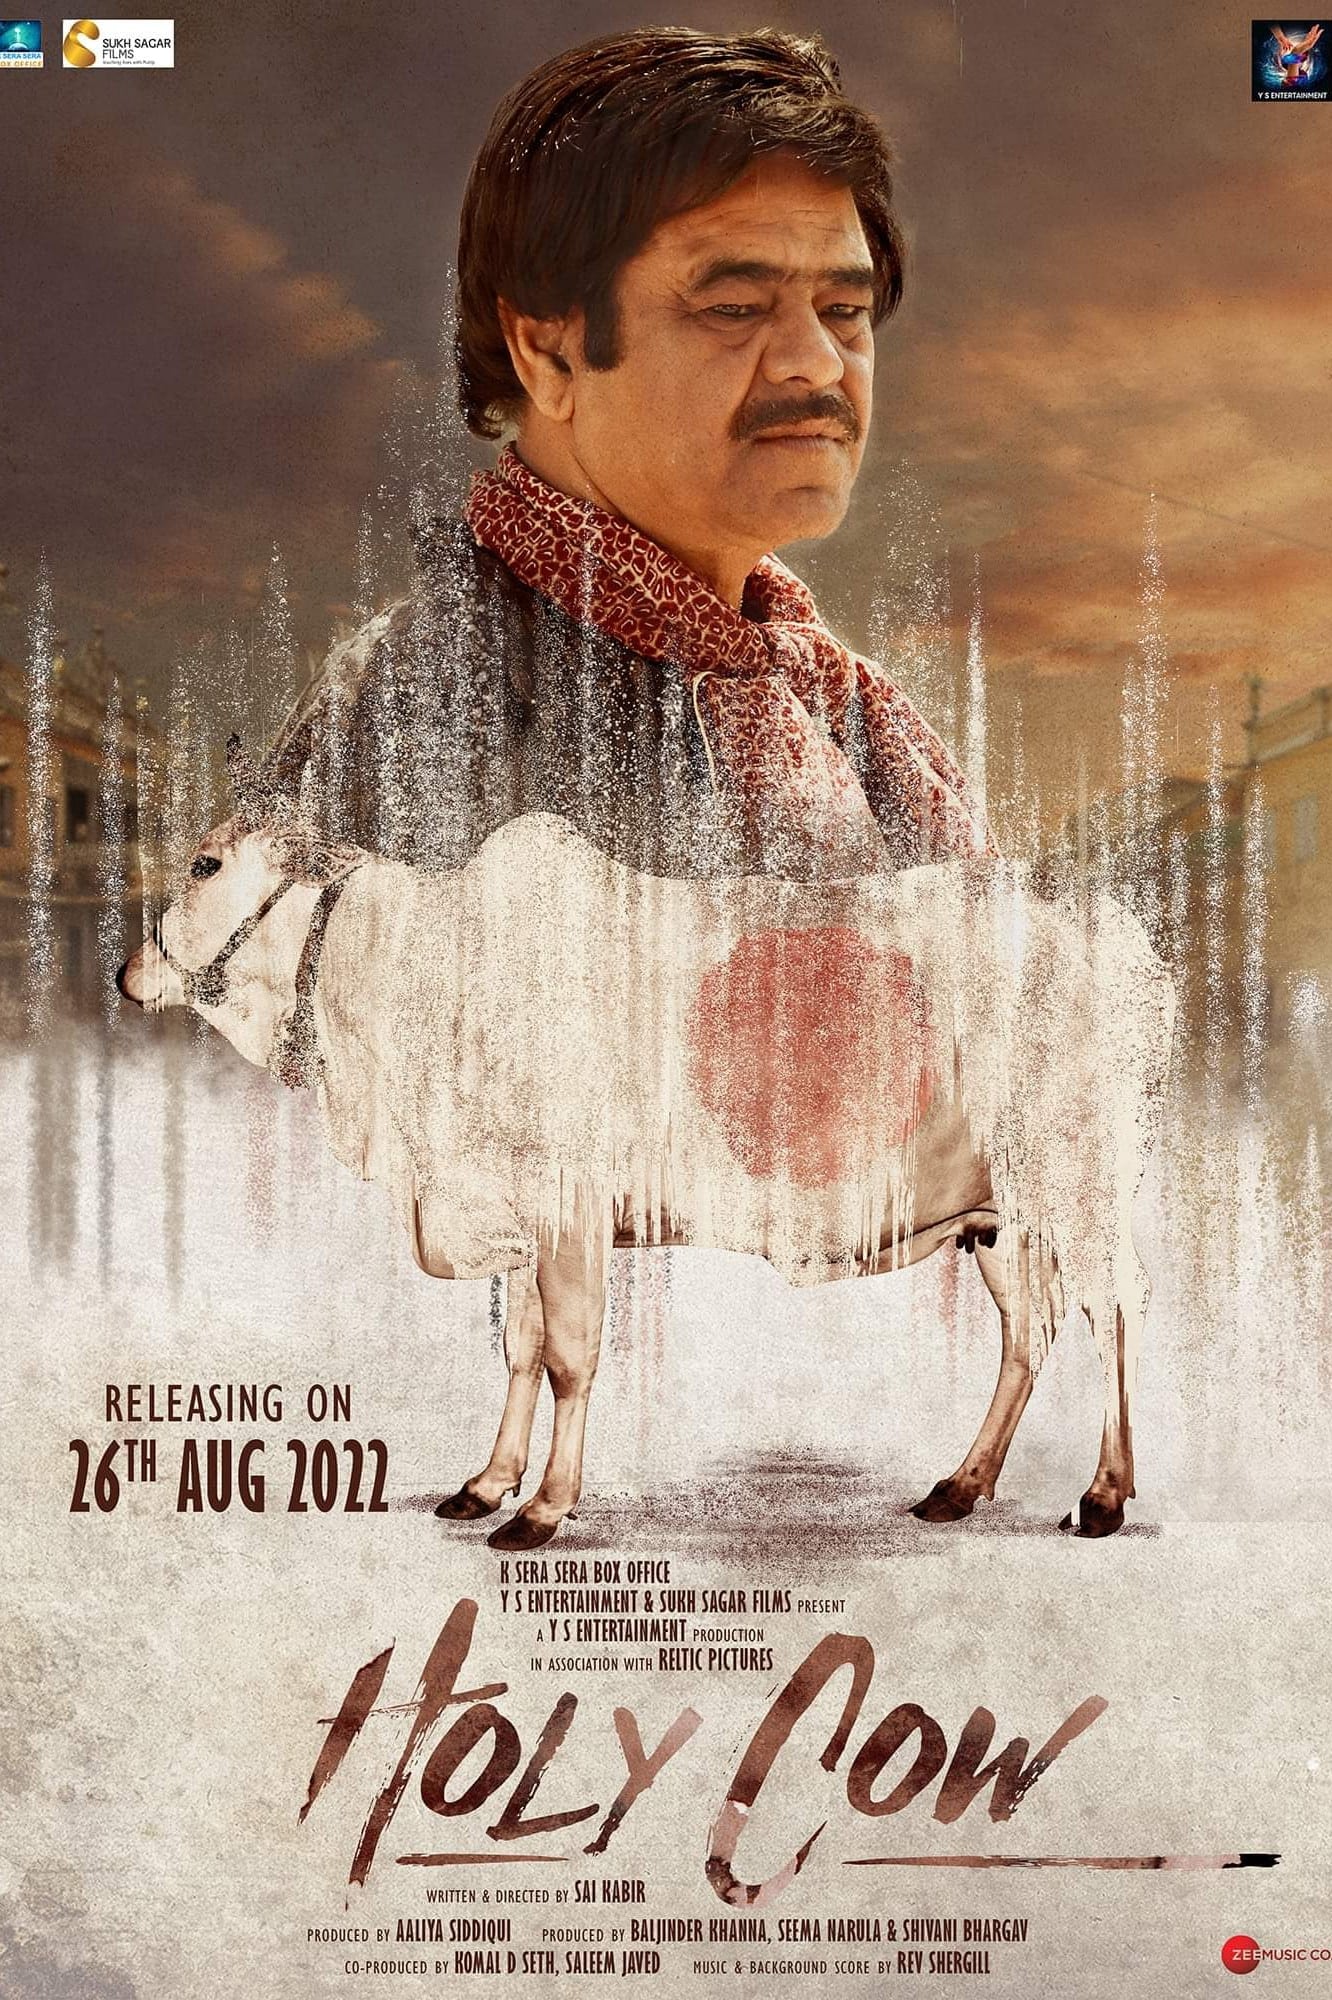 Holy Cow (2022) poster - Allmovieland.com